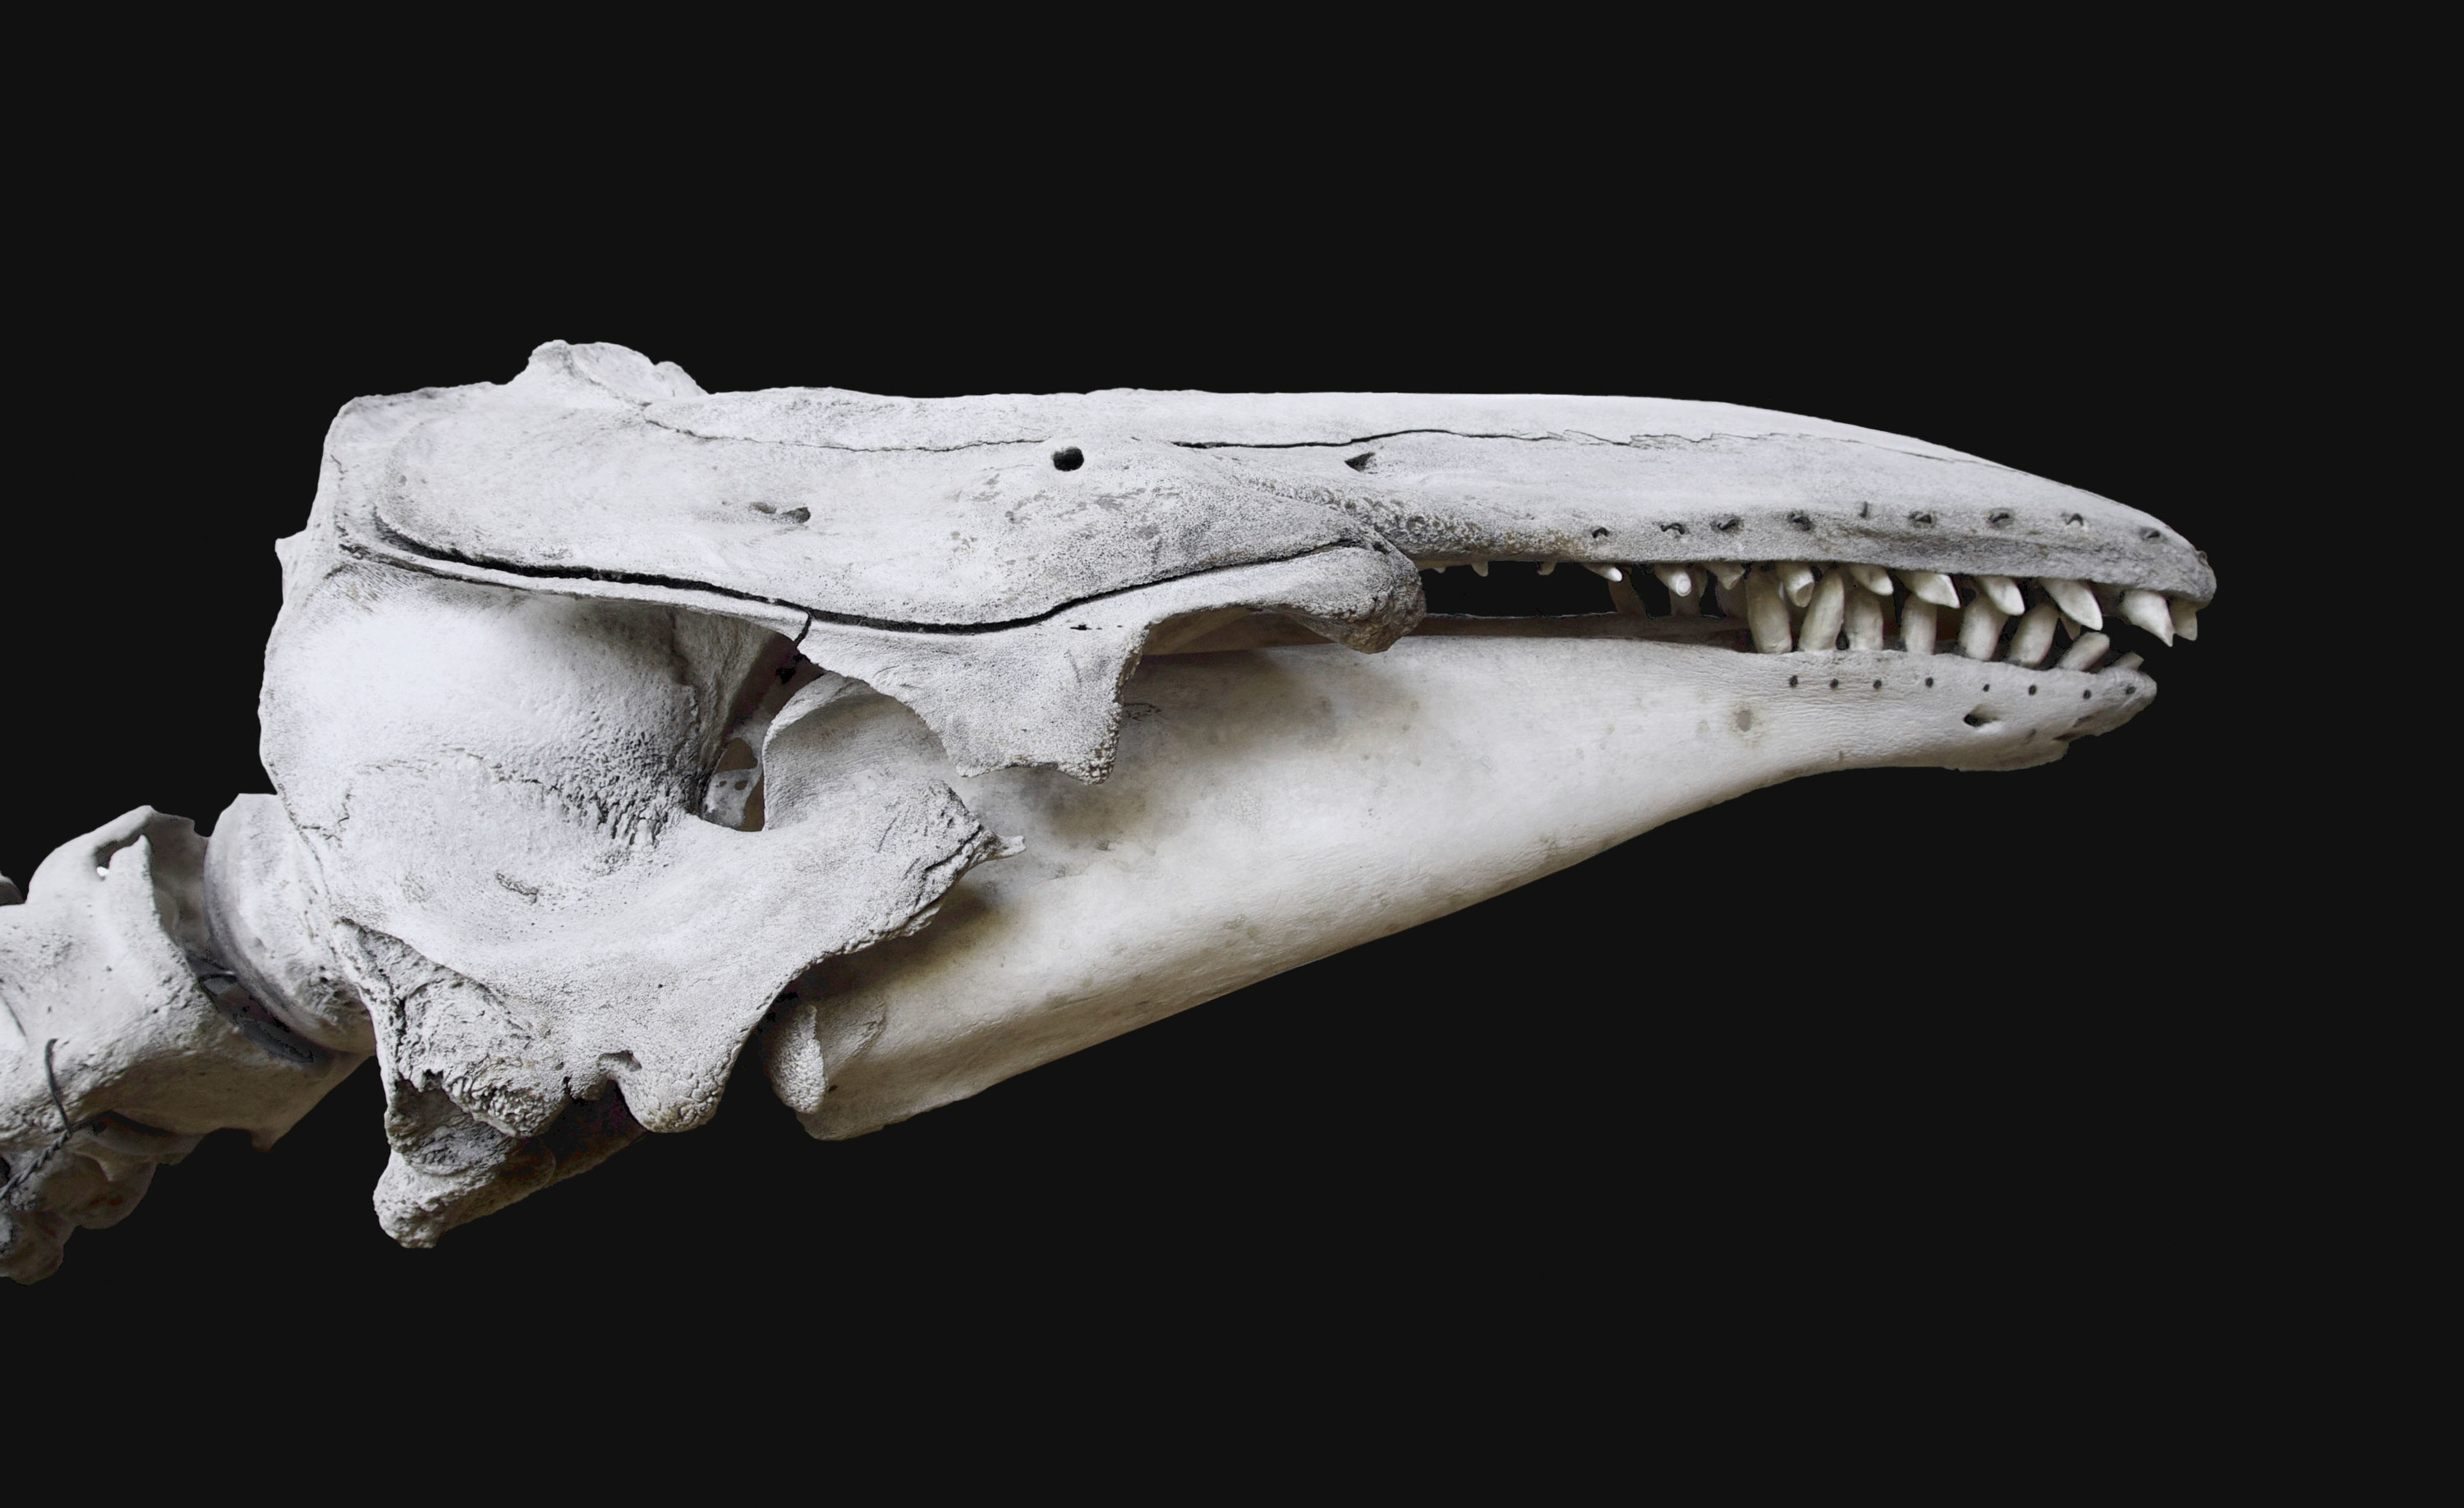 A beluga whale skull